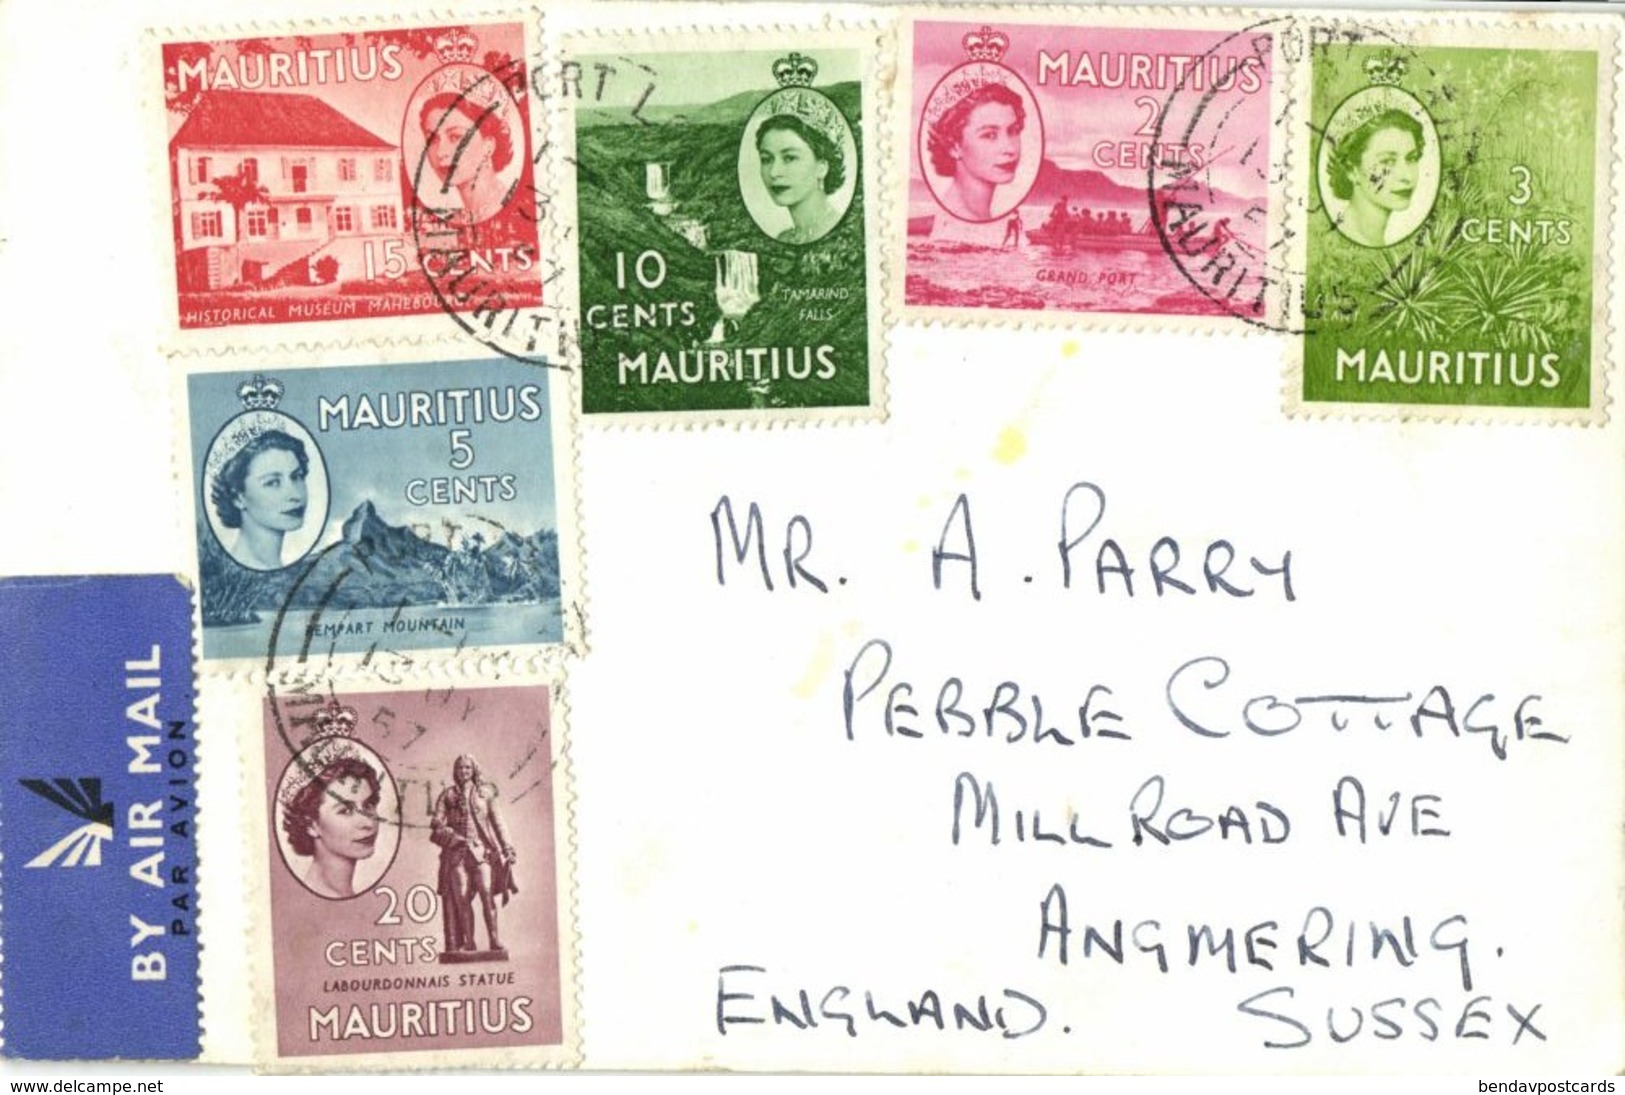 Mauritius, PORT-LOUIS, Harbour Scene (1957) RPPC Postcard - Mauricio